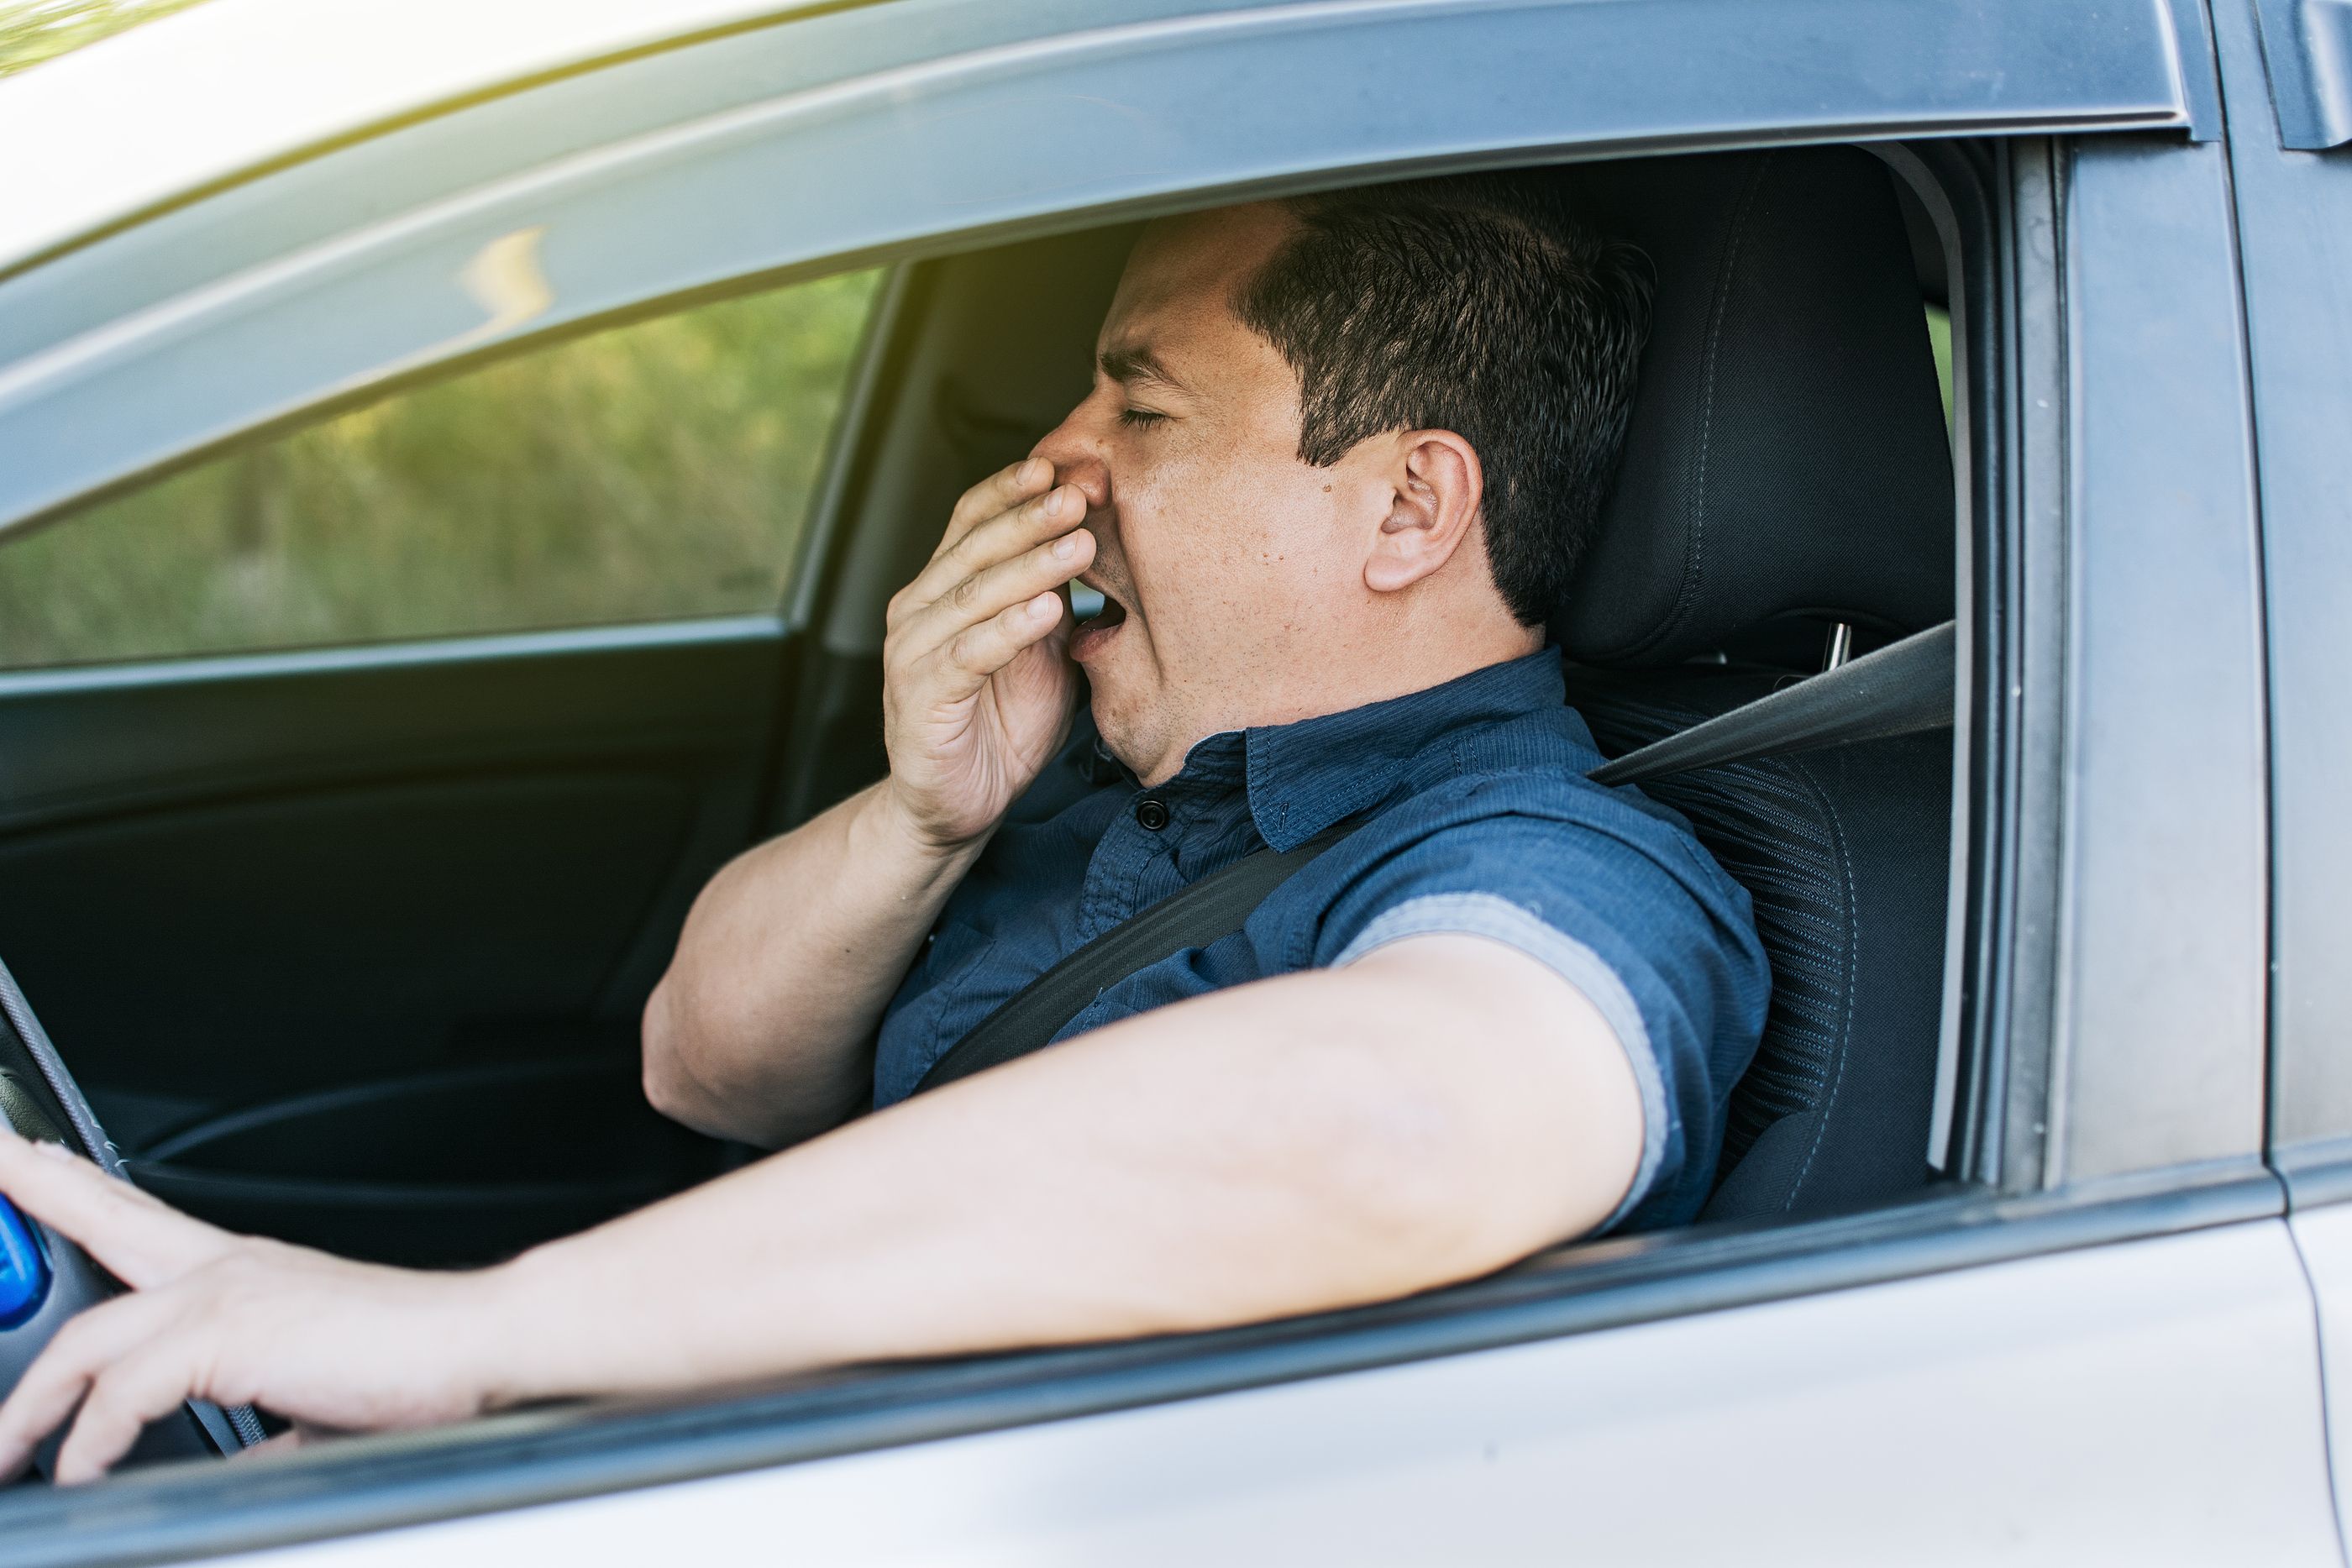 La DGT alerta a los mayores: cuidado con la somnolencia al volante